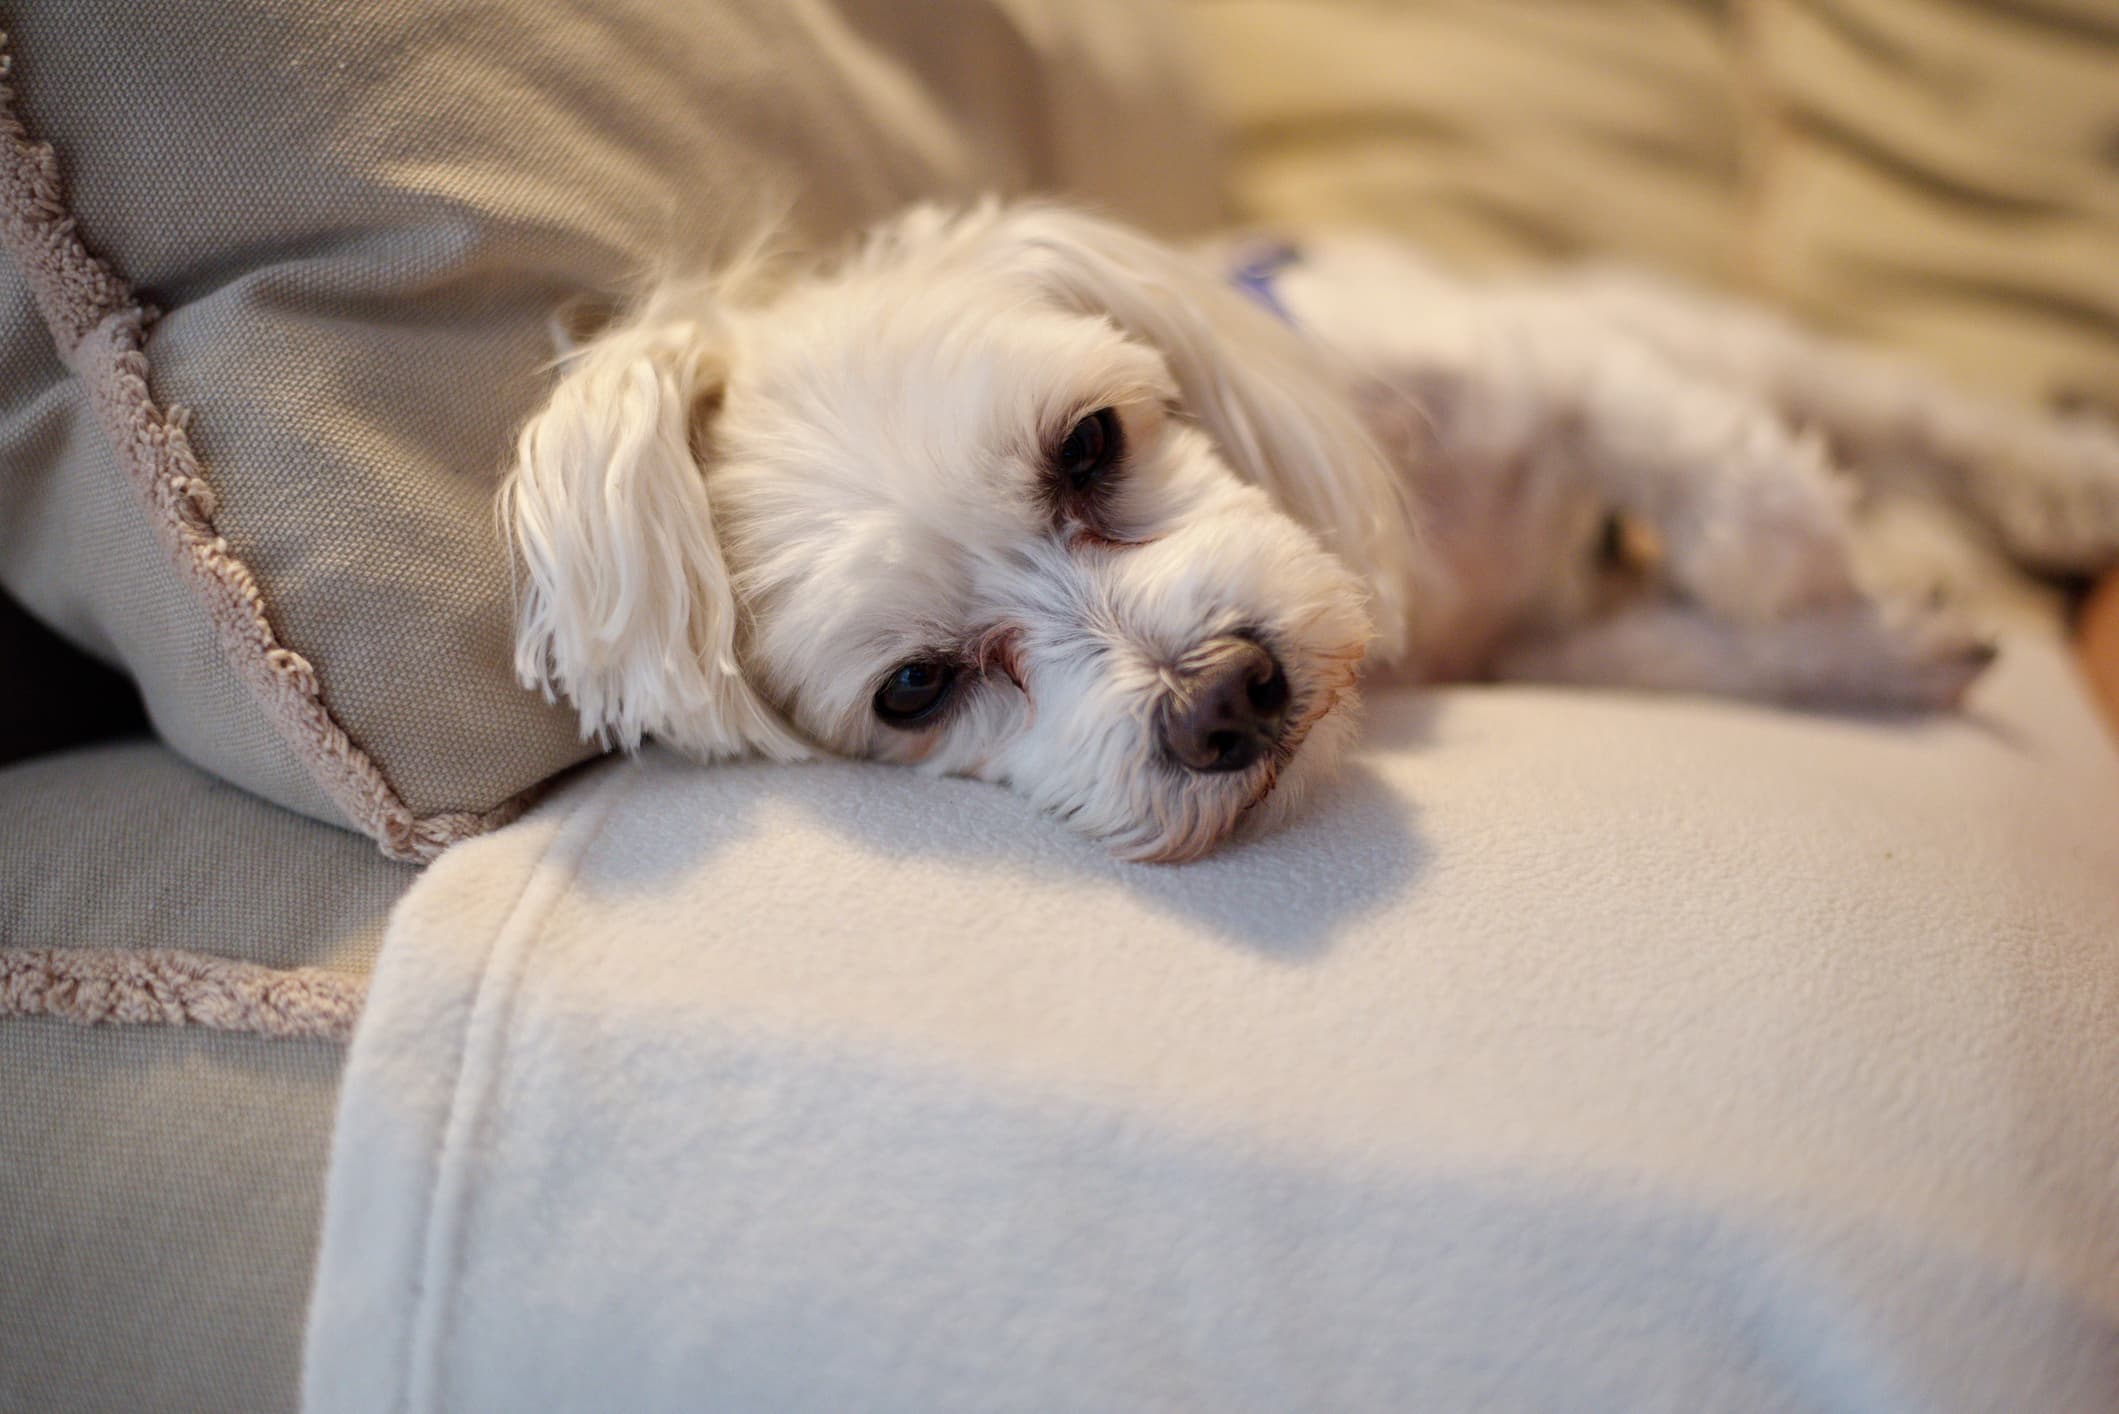 Um cachorro de pelo branco e olhos escuros, deitado sobre uma coberta branca que está sobre um sofá cinza e fundo desfocado.